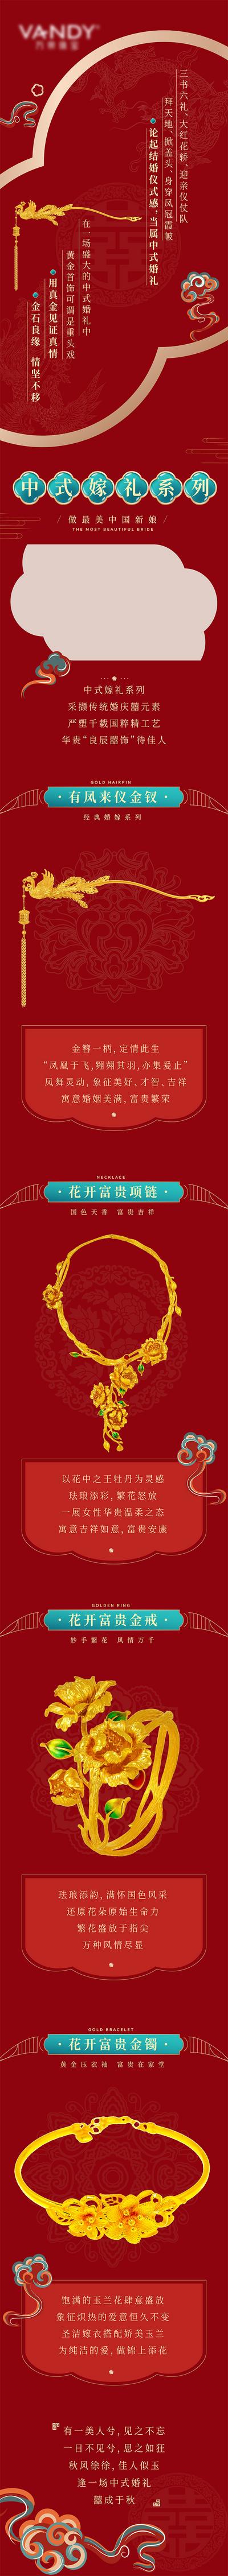 南门网 海报 长图 推文 公众号 婚嫁 首饰 黄金 结婚 订婚 喜庆 中国风 中式